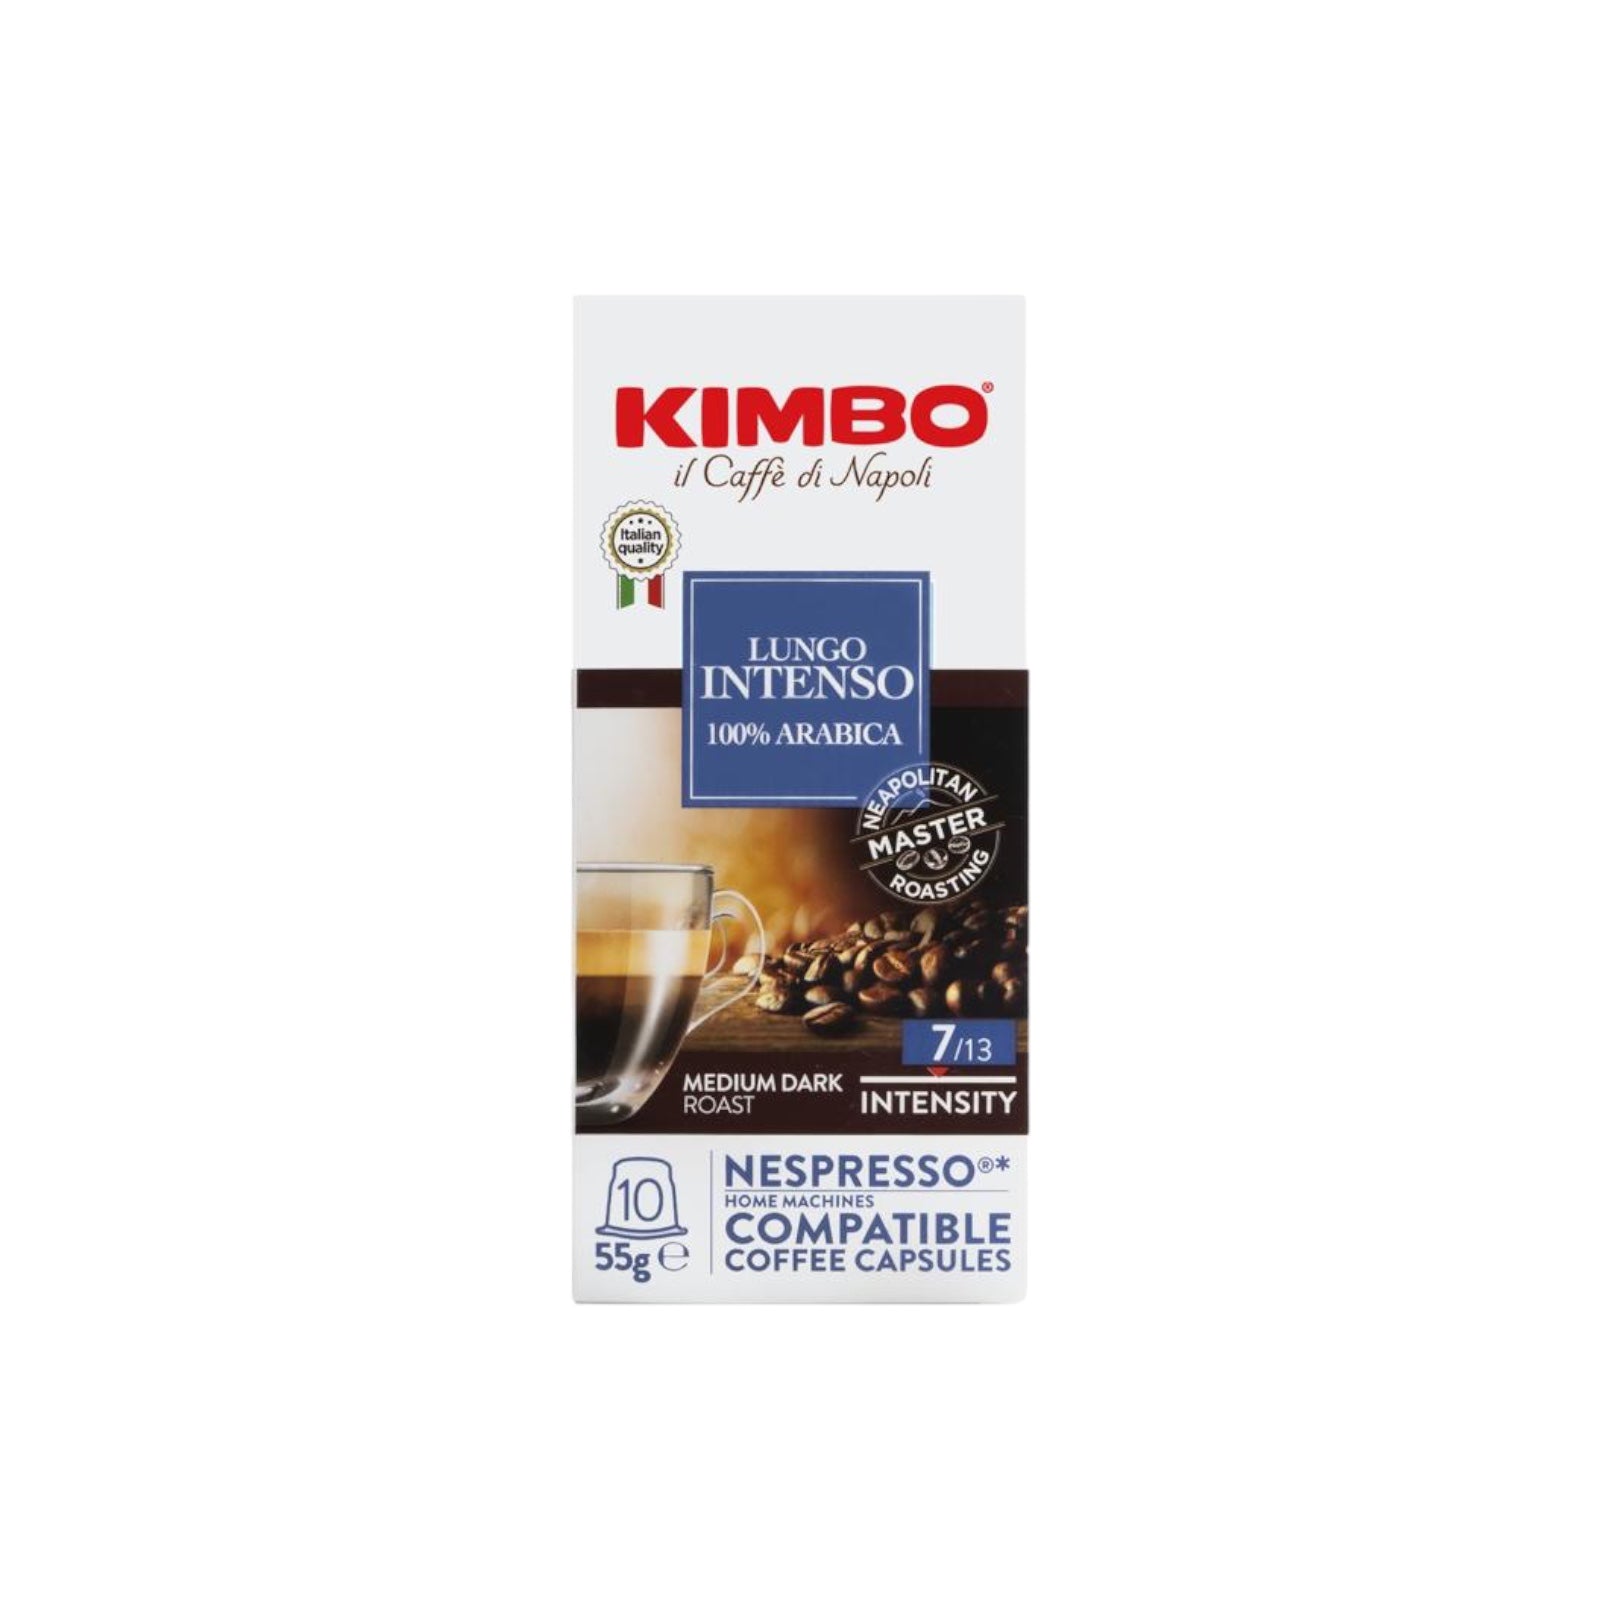 Kimbo Nespresso Lungo Intenso 100% Arabica 10 Capsules